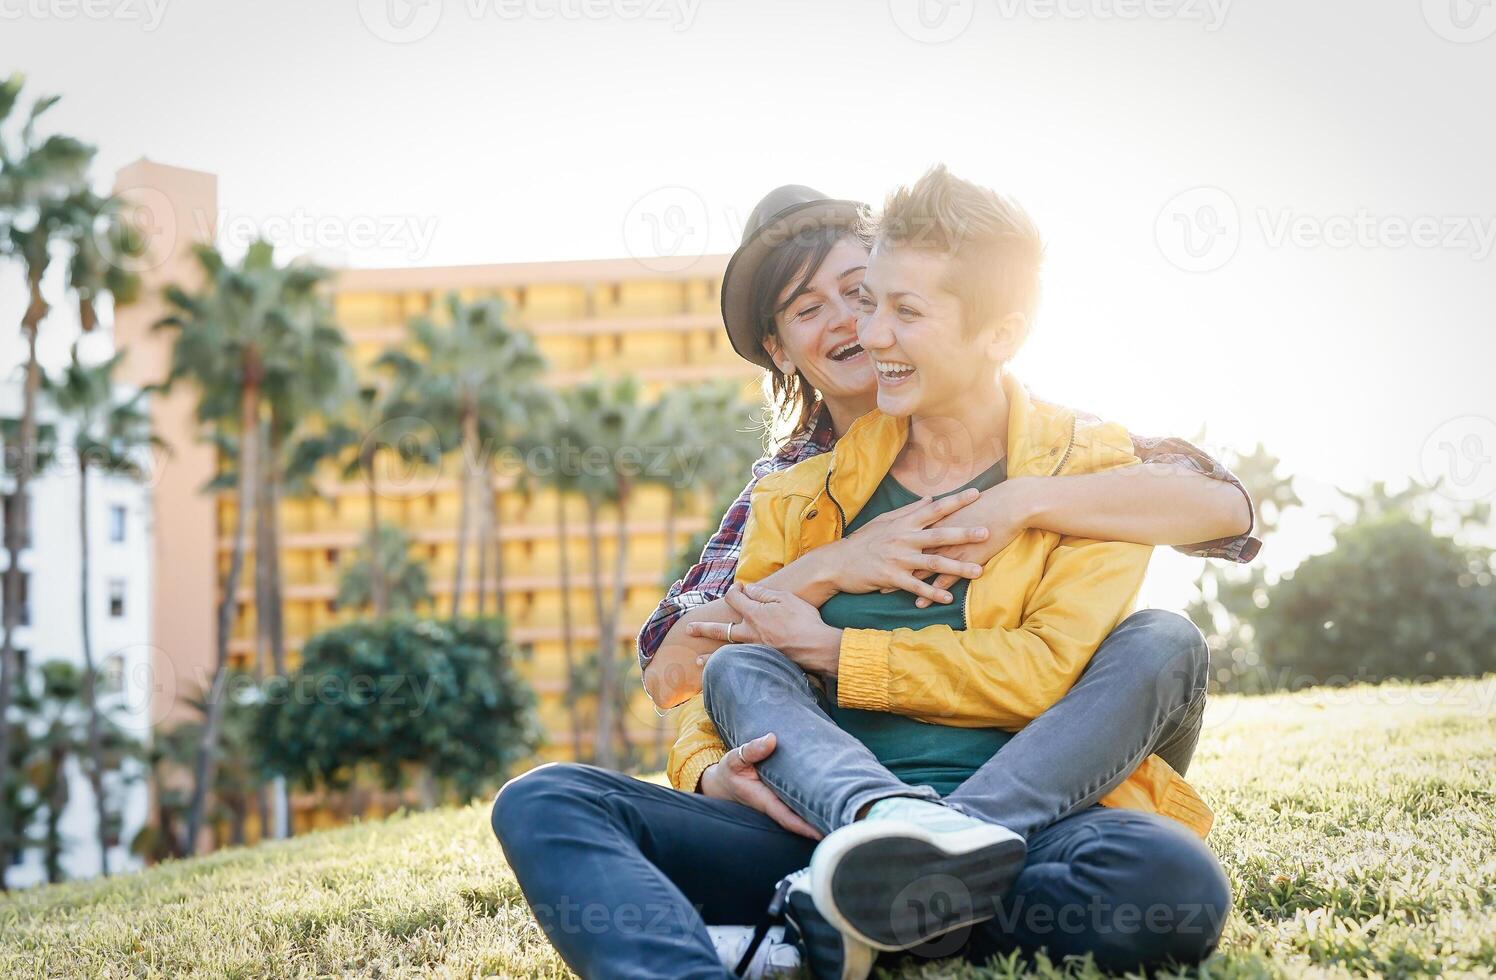 contento gay Pareja en un romántico fecha abrazando y riendo juntos sentado en césped en un parque - joven lesbianas teniendo un oferta momento al aire libre - lesbianas, bisexualidad, relación estilo de vida concepto foto